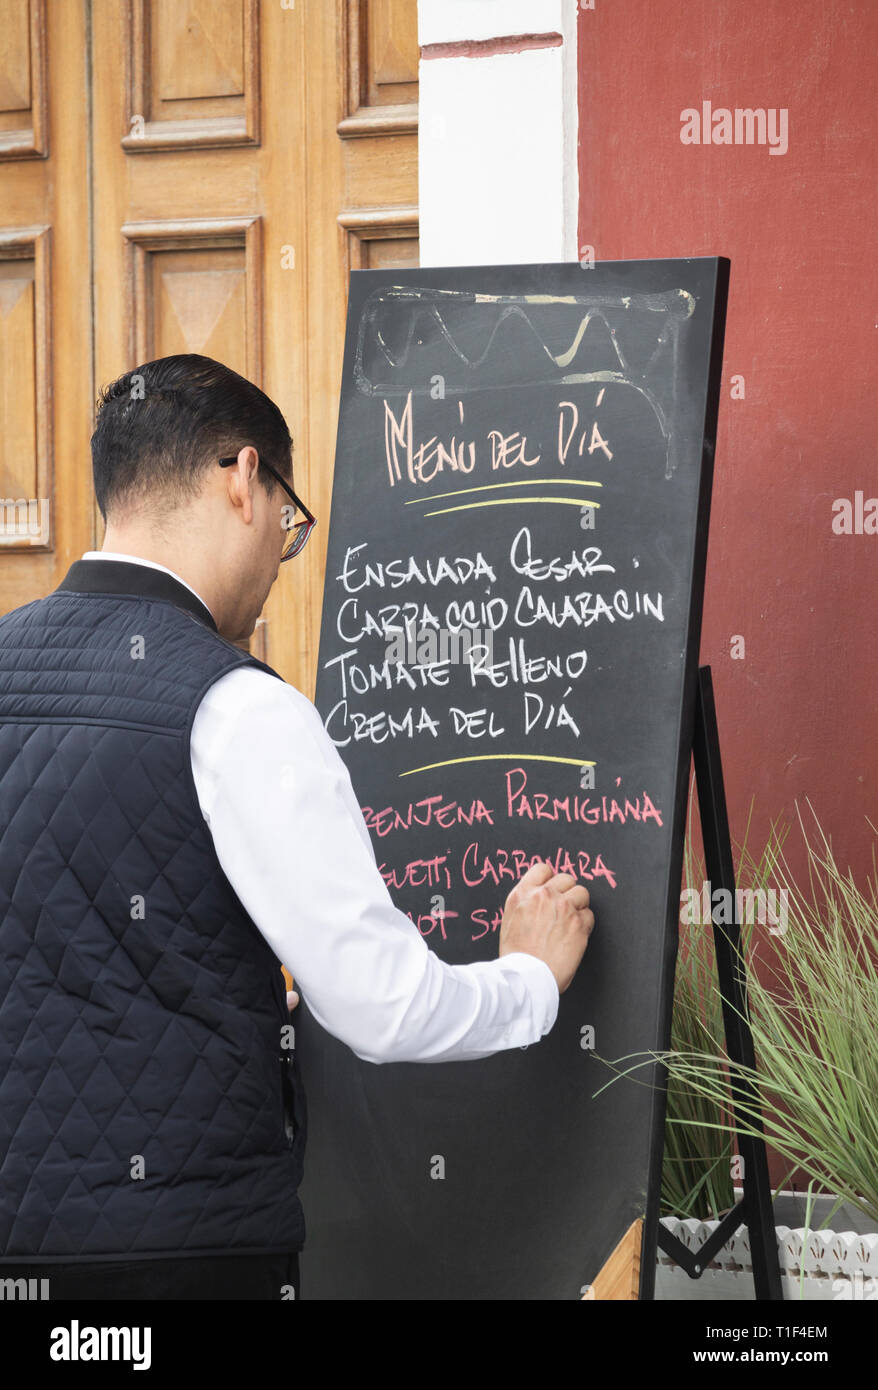 Cameriere Menu scrittura del dia, [menu del giorno] sulla lavagna fuori del ristorante in Vegueta, Las Palmas di Gran Canaria Isole Canarie Spagna Foto Stock